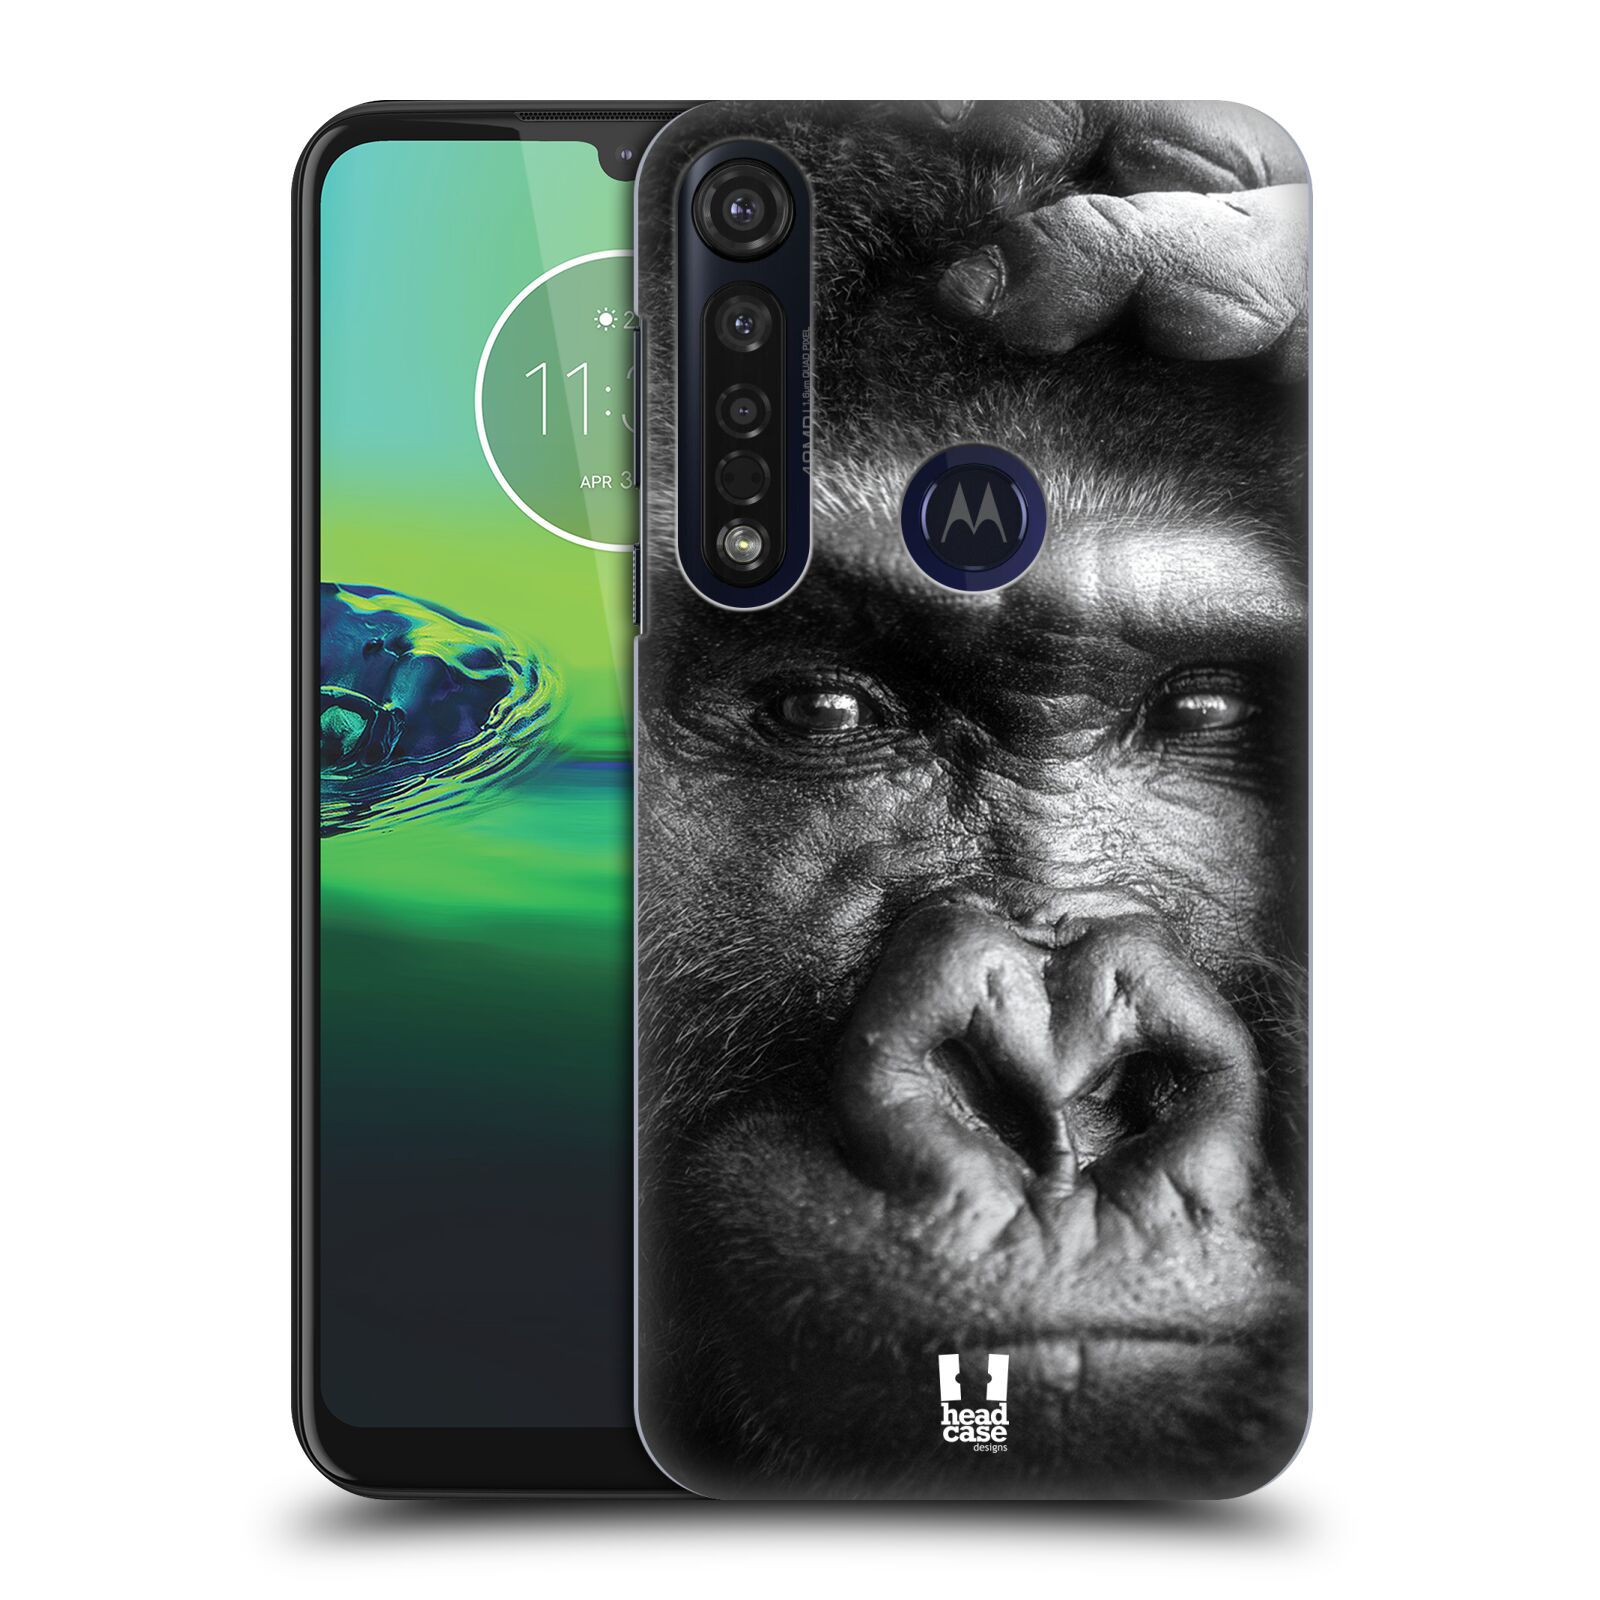 Pouzdro na mobil Motorola Moto G8 PLUS - HEAD CASE - vzor Divočina, Divoký život a zvířata foto GORILA TVÁŘ